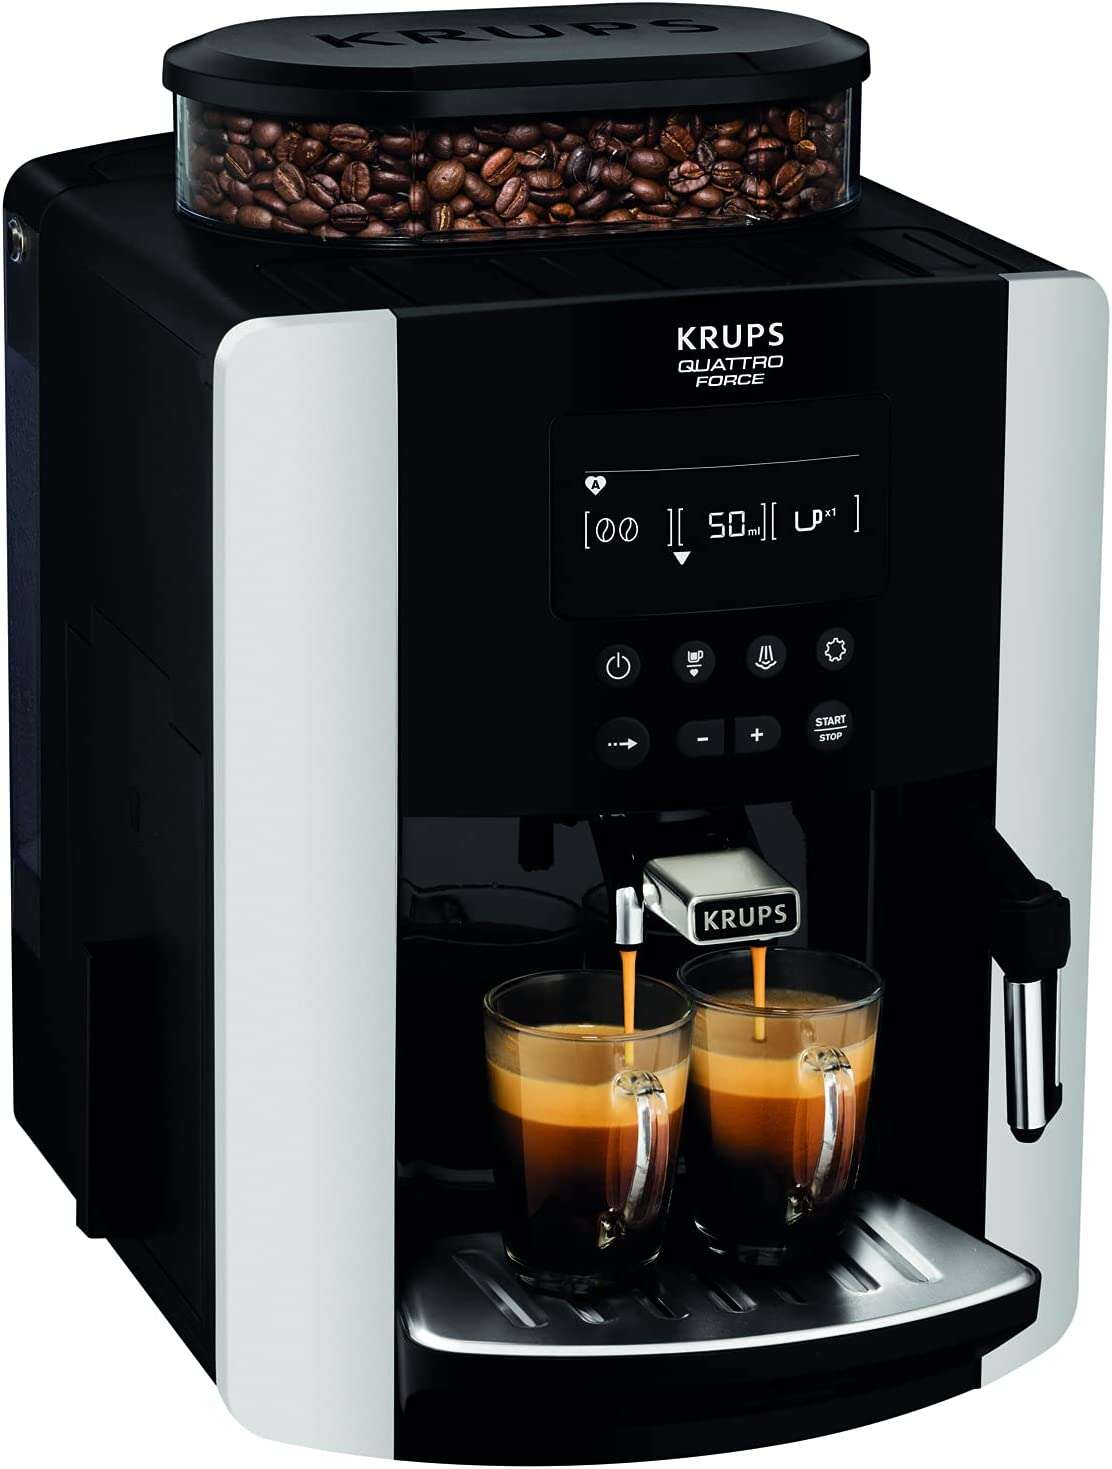 Le prix de la machine à café à grain Krups Silver Arabica est en chute sur